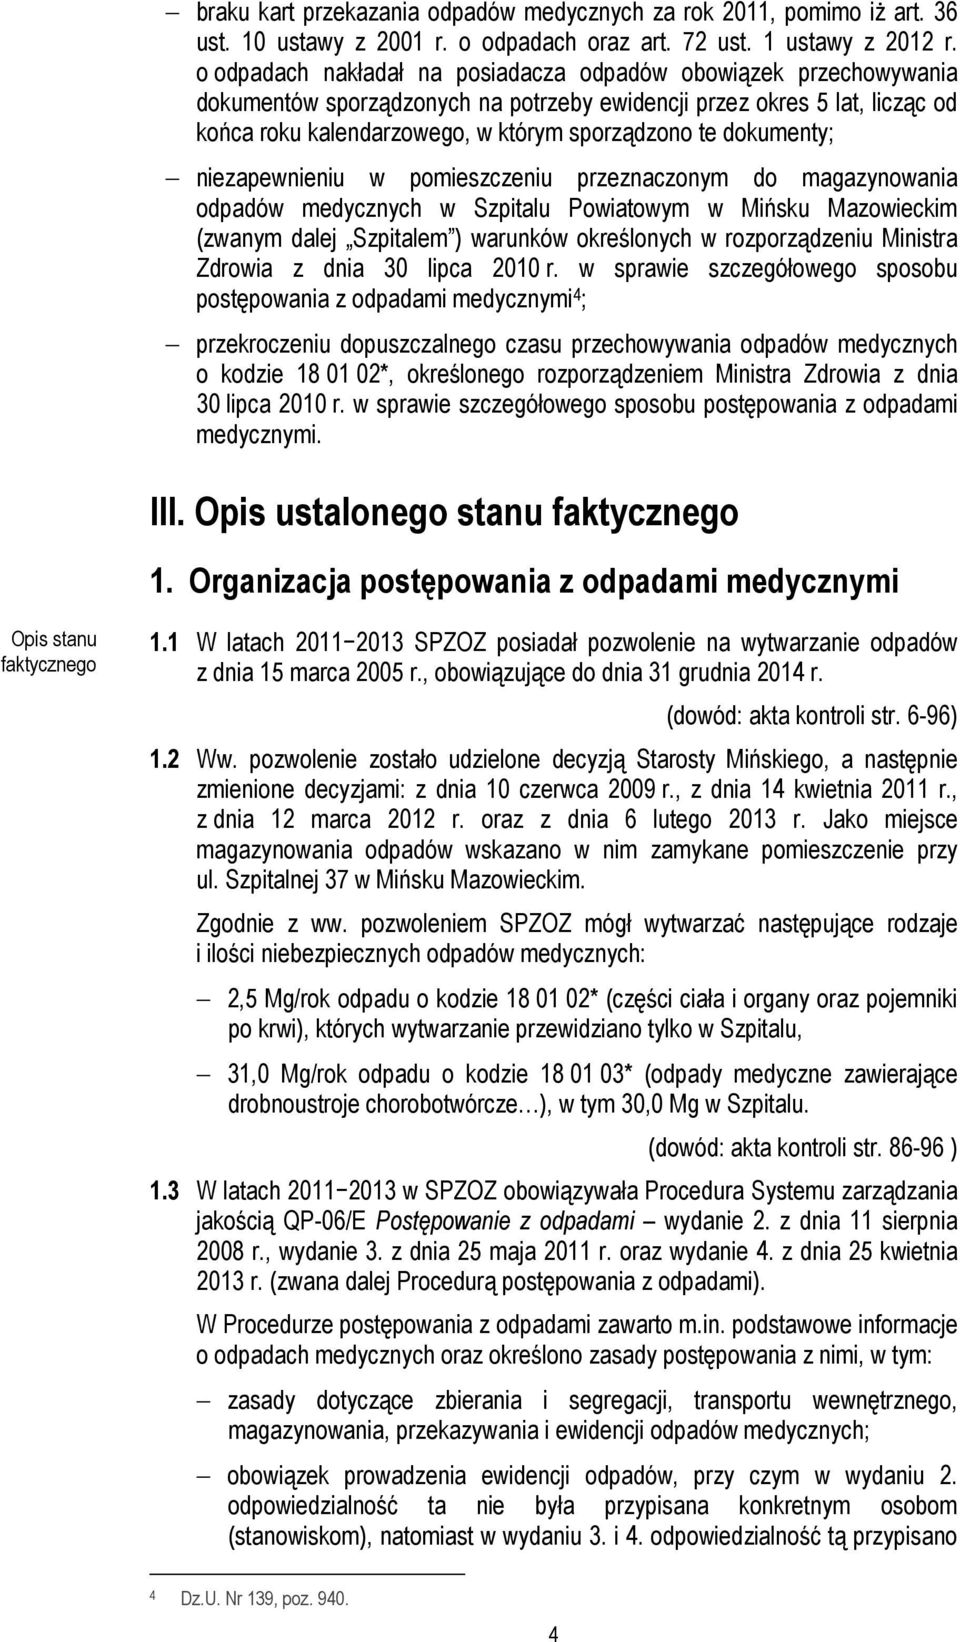 dokumenty; niezapewnieniu w pomieszczeniu przeznaczonym do magazynowania odpadów medycznych w Szpitalu Powiatowym w Mińsku Mazowieckim (zwanym dalej Szpitalem ) warunków określonych w rozporządzeniu